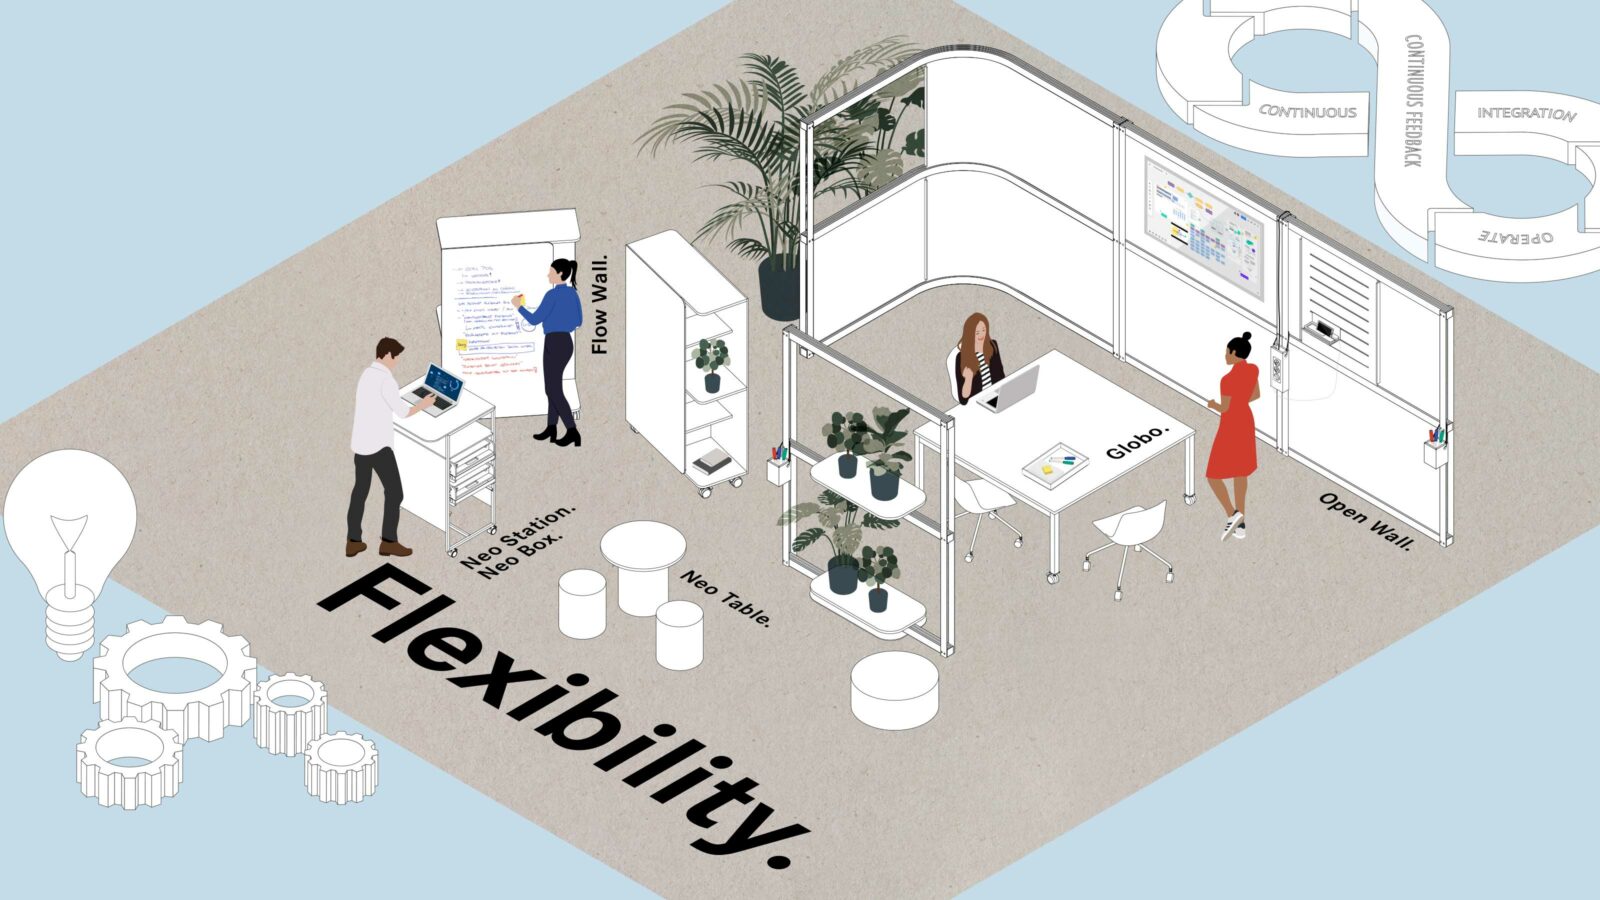 Zeichnung zum Thema Flexibilität zeigt Büromöbel auf einer Fläche und vier Menschen die arbeiten.